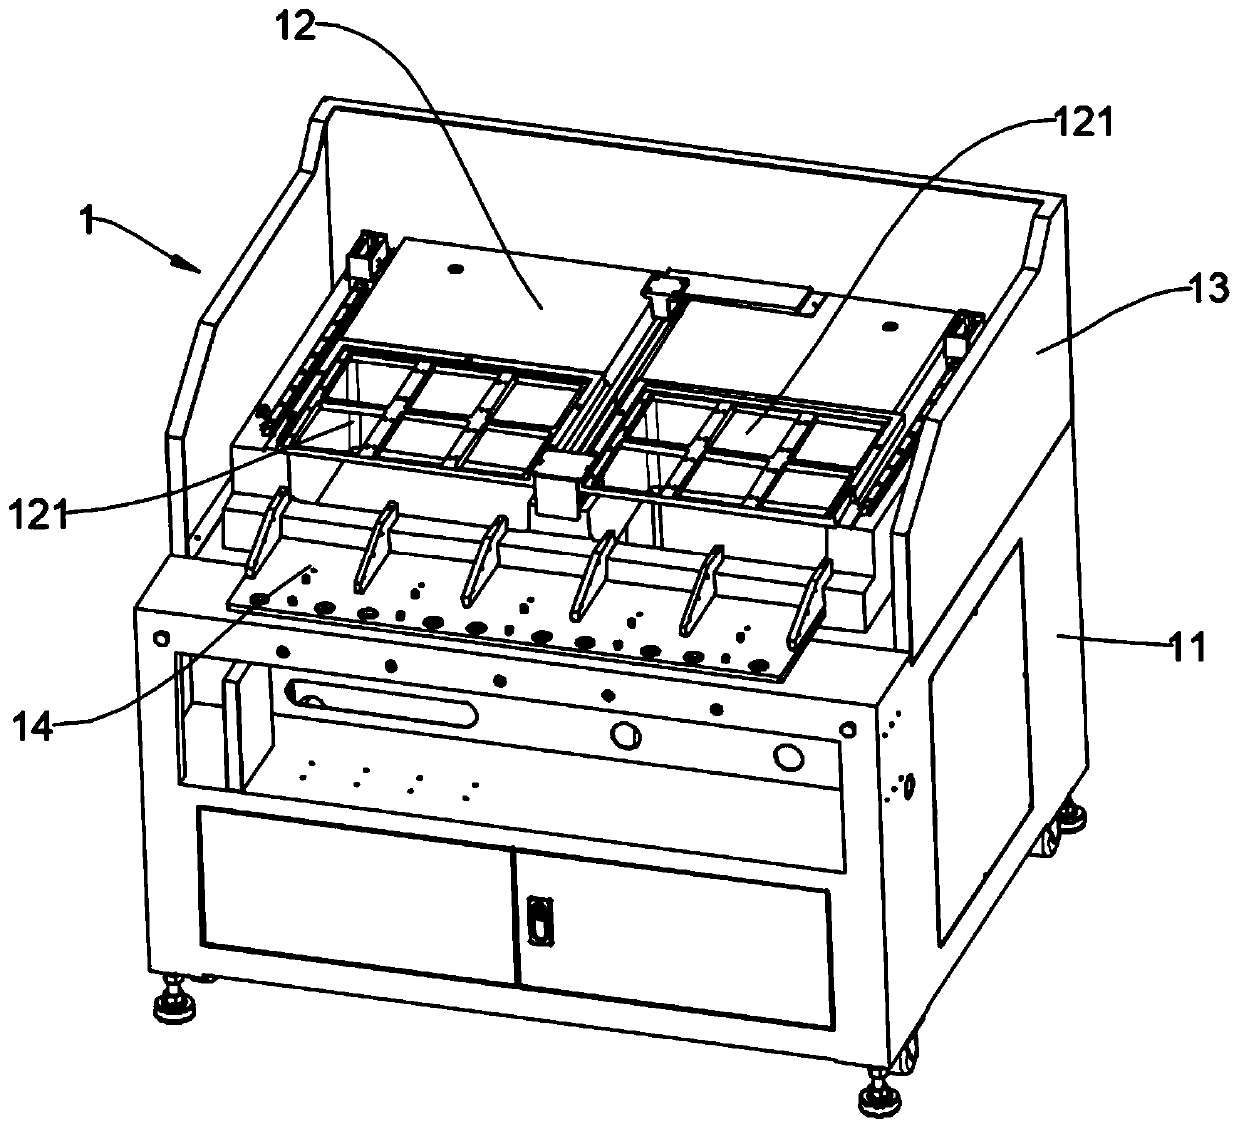 Automatic wafer testing machine